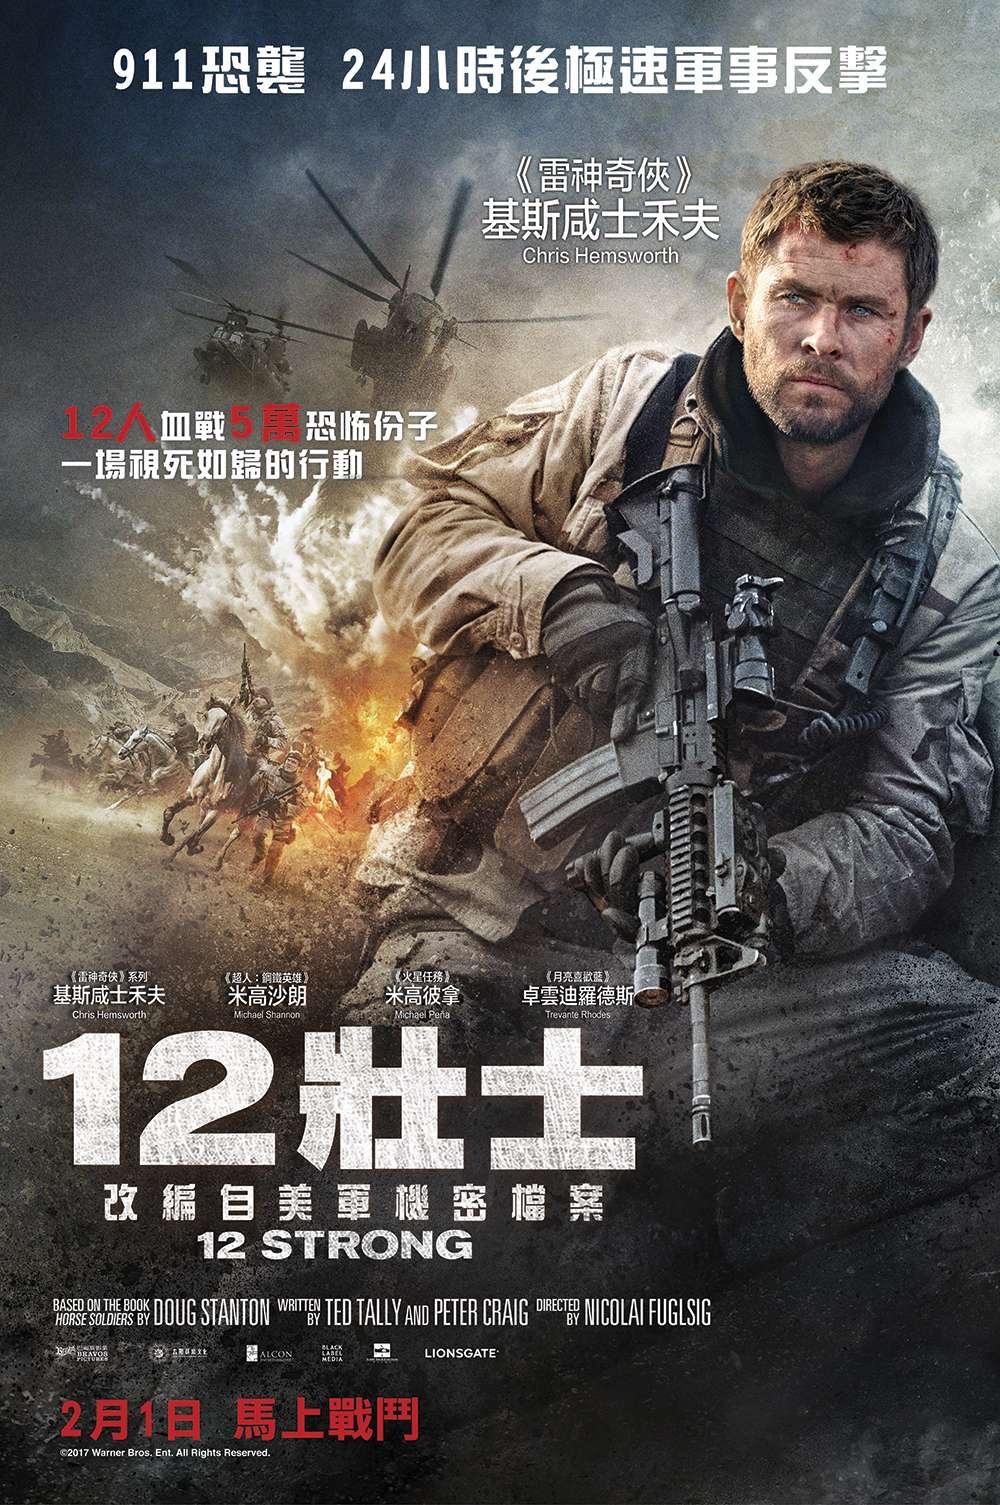 Hong Kong Poster